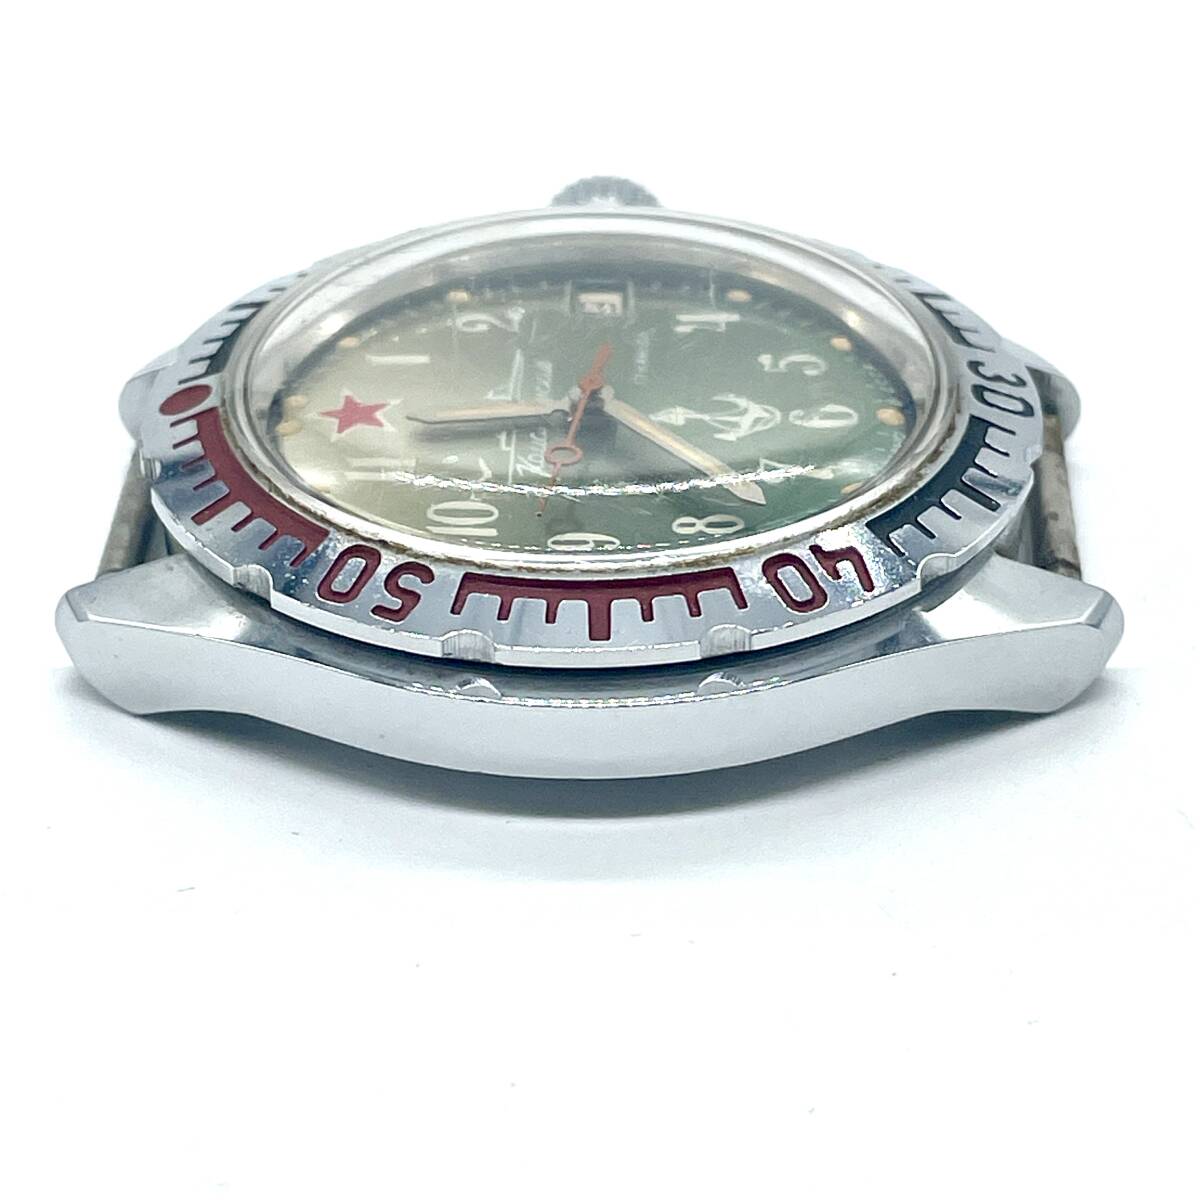 【ジャンク】稼働品 BOCTOK ボストーク コマンダスキー 手巻き 機械式 腕時計 デイト アナログ ウォッチ ロシア ソ連 の画像7